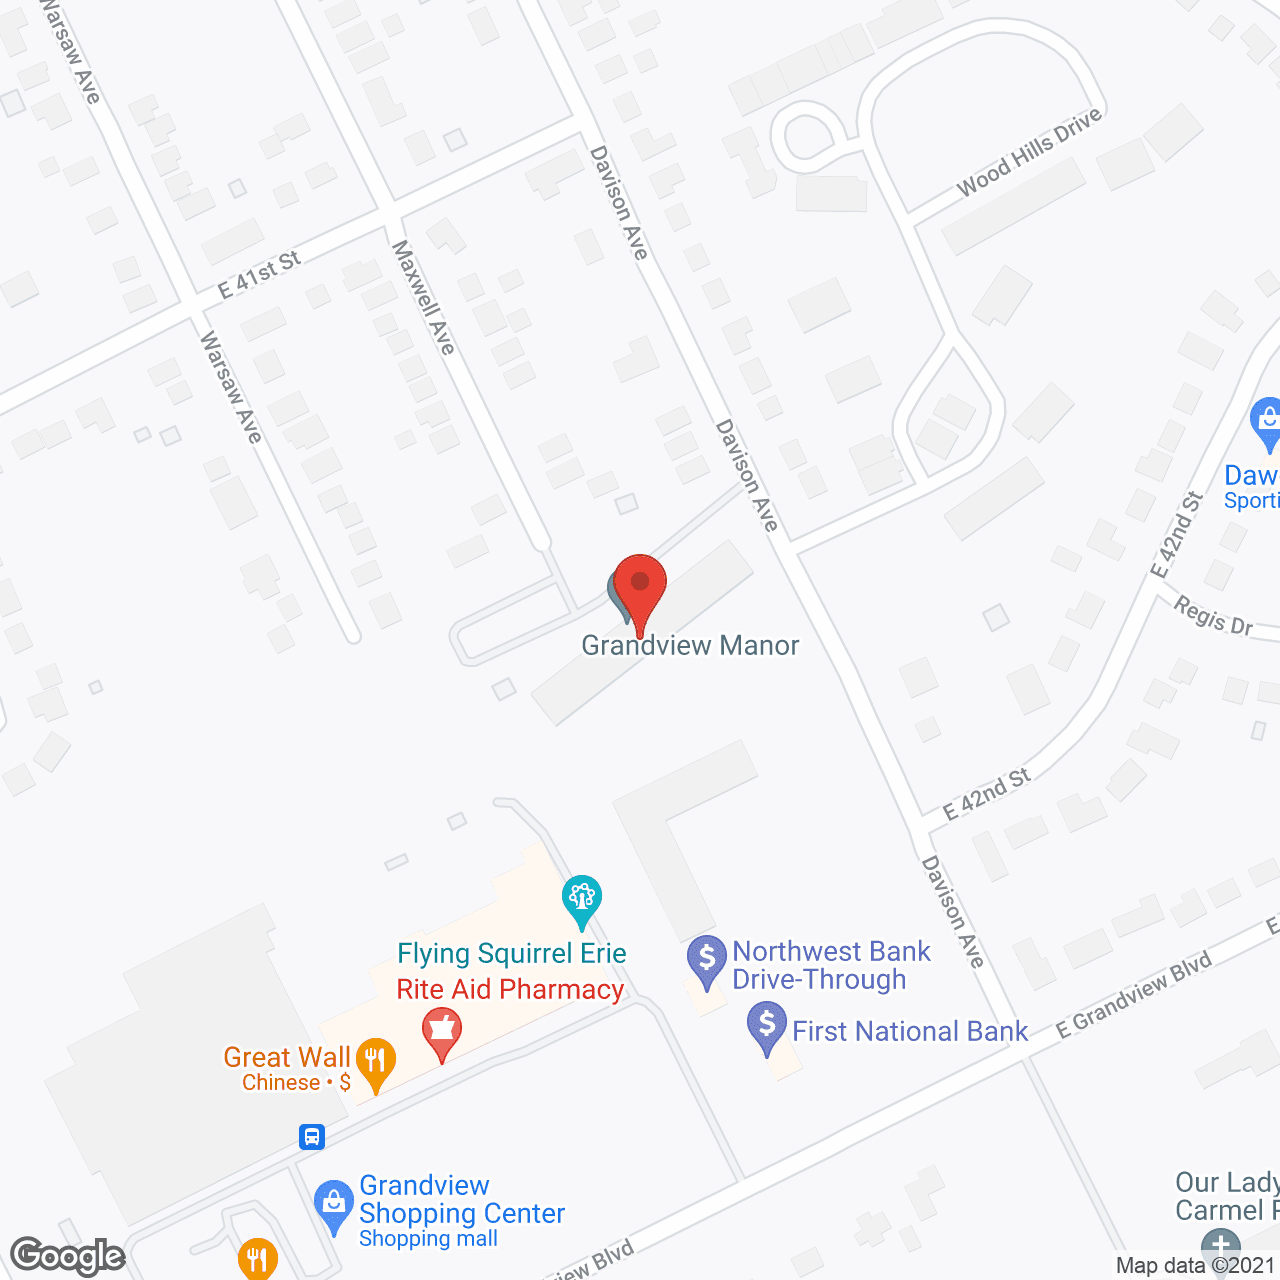 Grandview Manor in google map